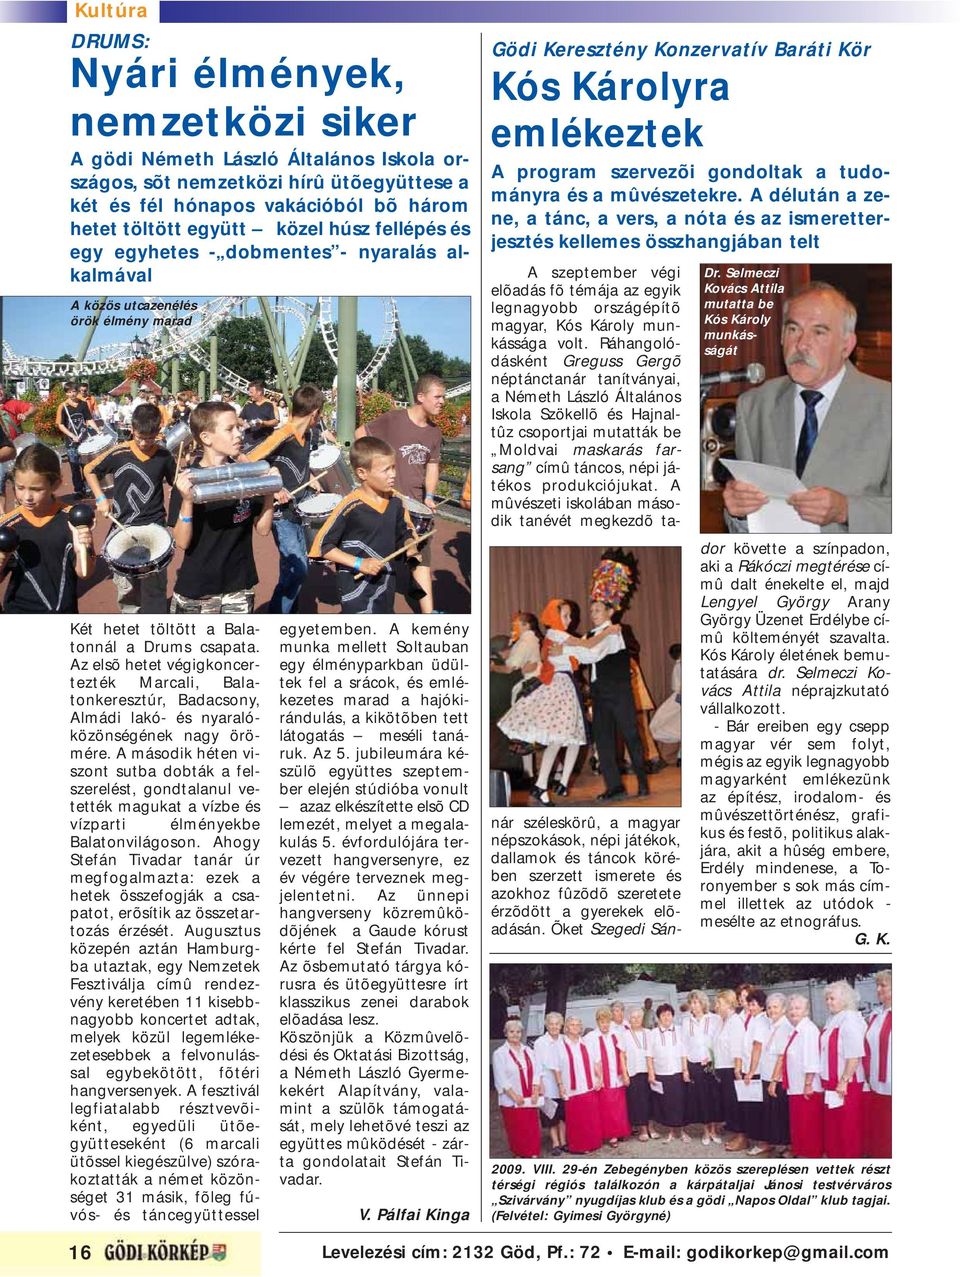 Az elsõ hetet végigkoncertezték Marcali, Balatonkeresztúr, Badacsony, Almádi lakó- és nyaralóközönségének nagy örömére.